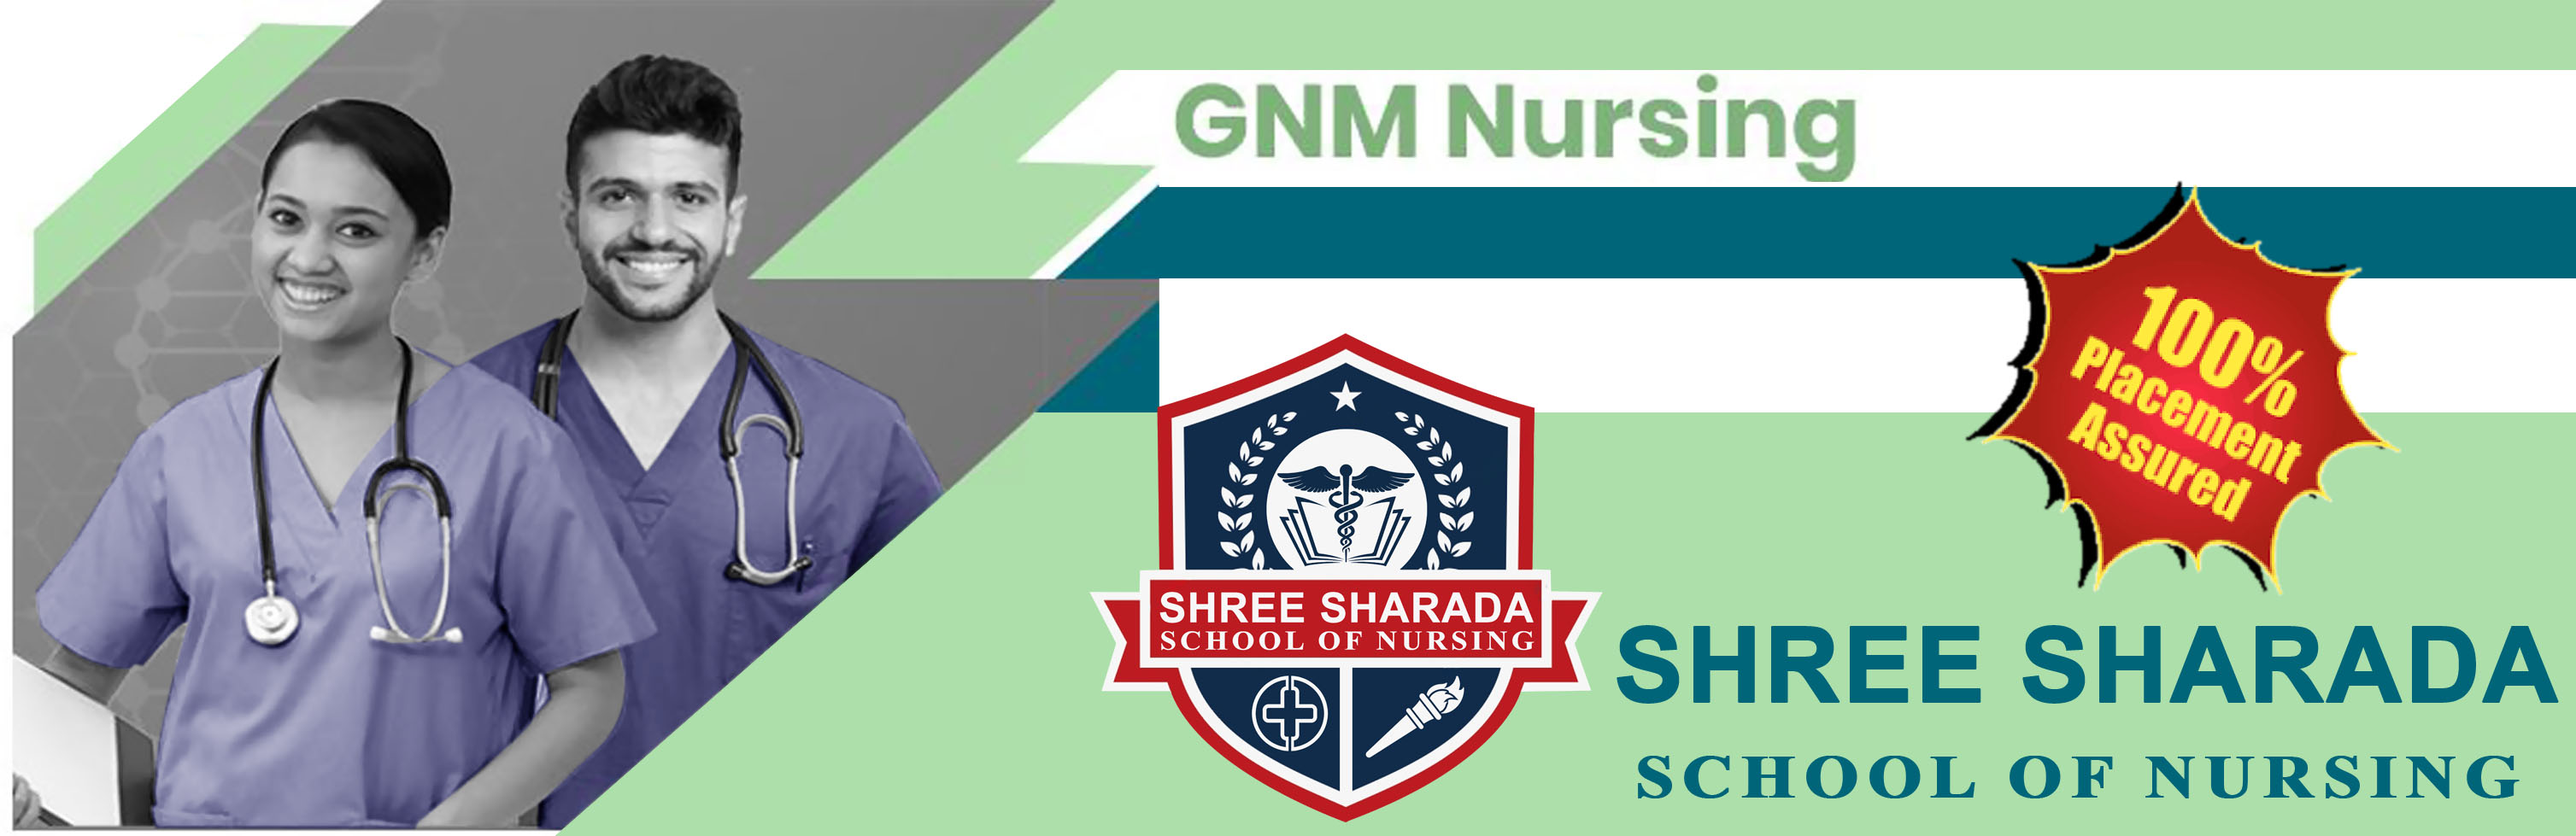 Shree Sharada School of Nursing, Bidar, Karnataka